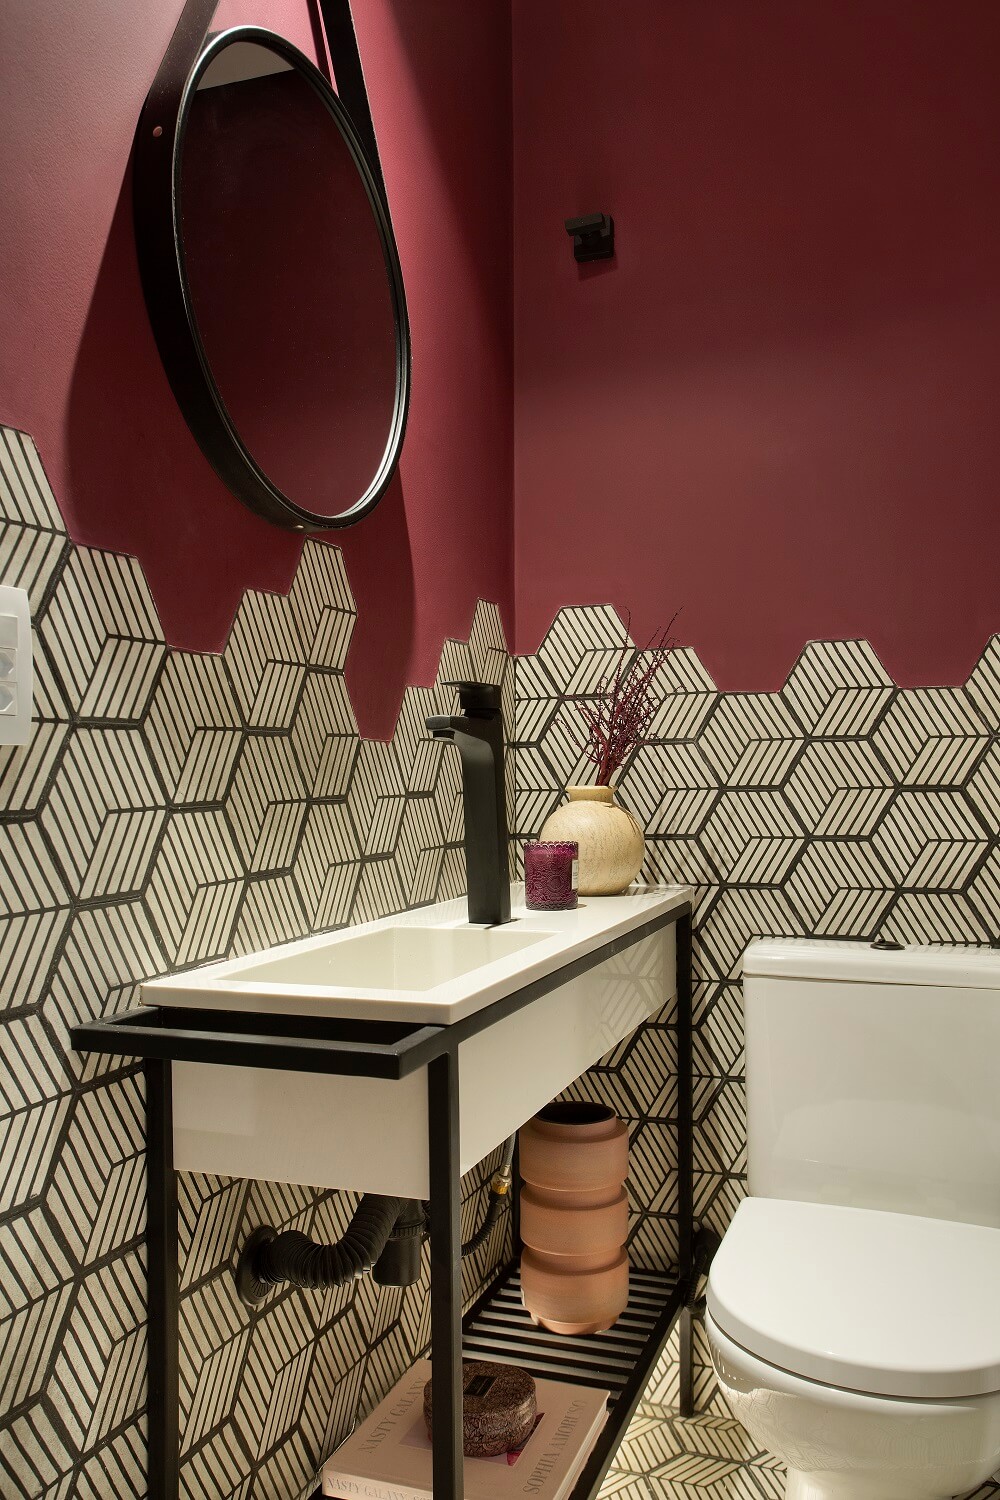 Revestimento hexagonal e espelho adnet marcam a decoração do lavabo